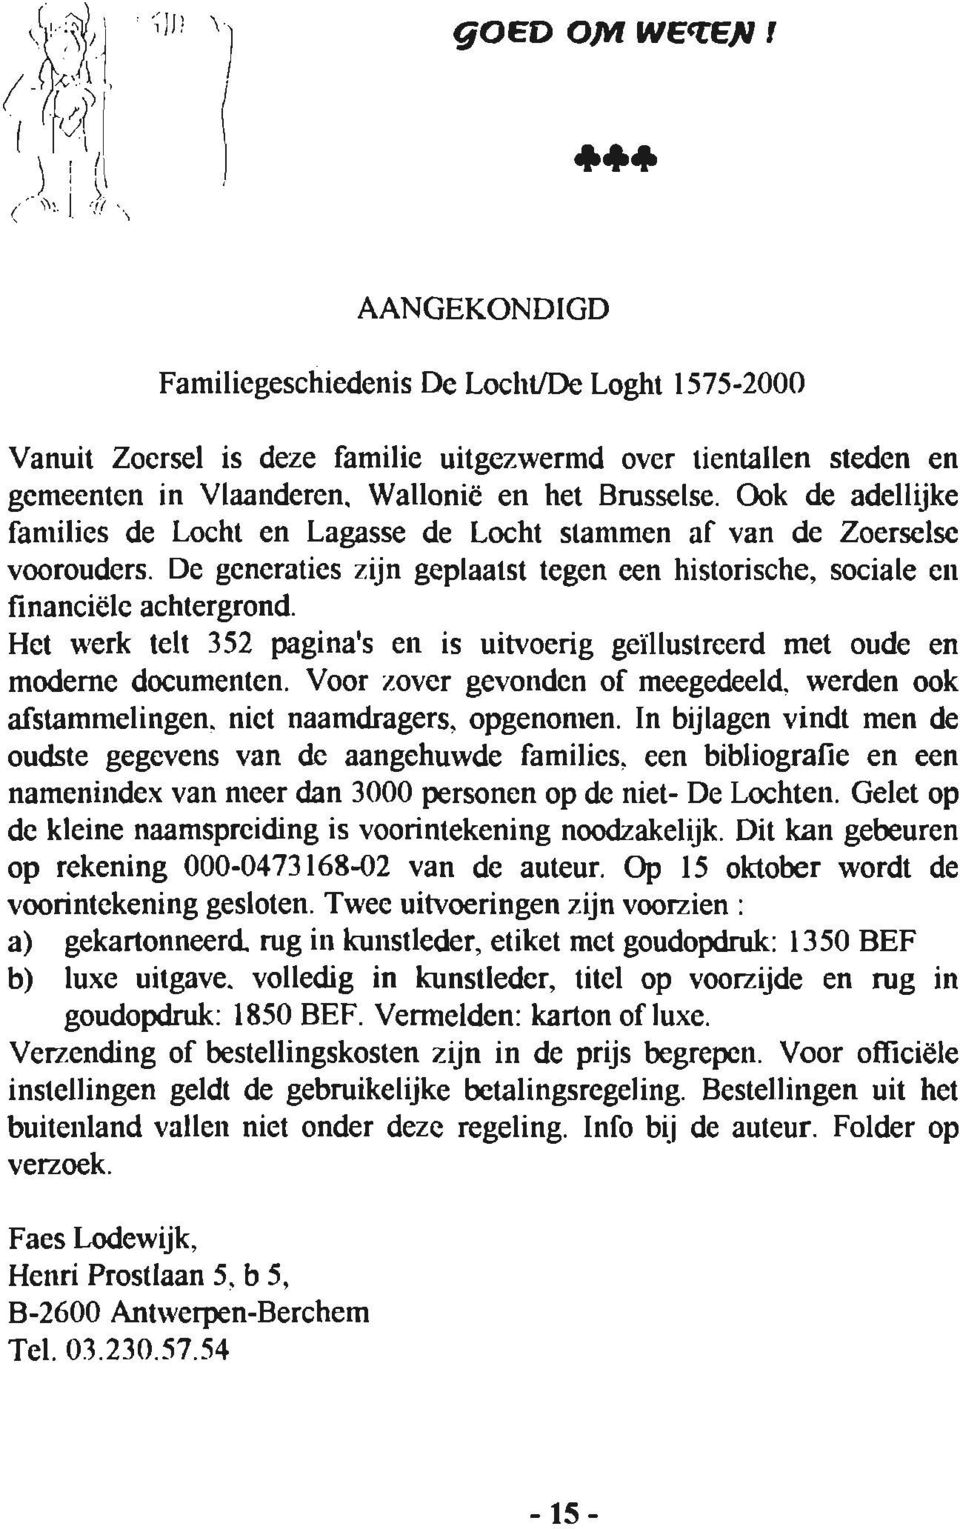 Wallonië en het Brusselse. Ook de adellijke families de Locht en Lagasse de Locht stammen af van de Zoerselse voorouders.